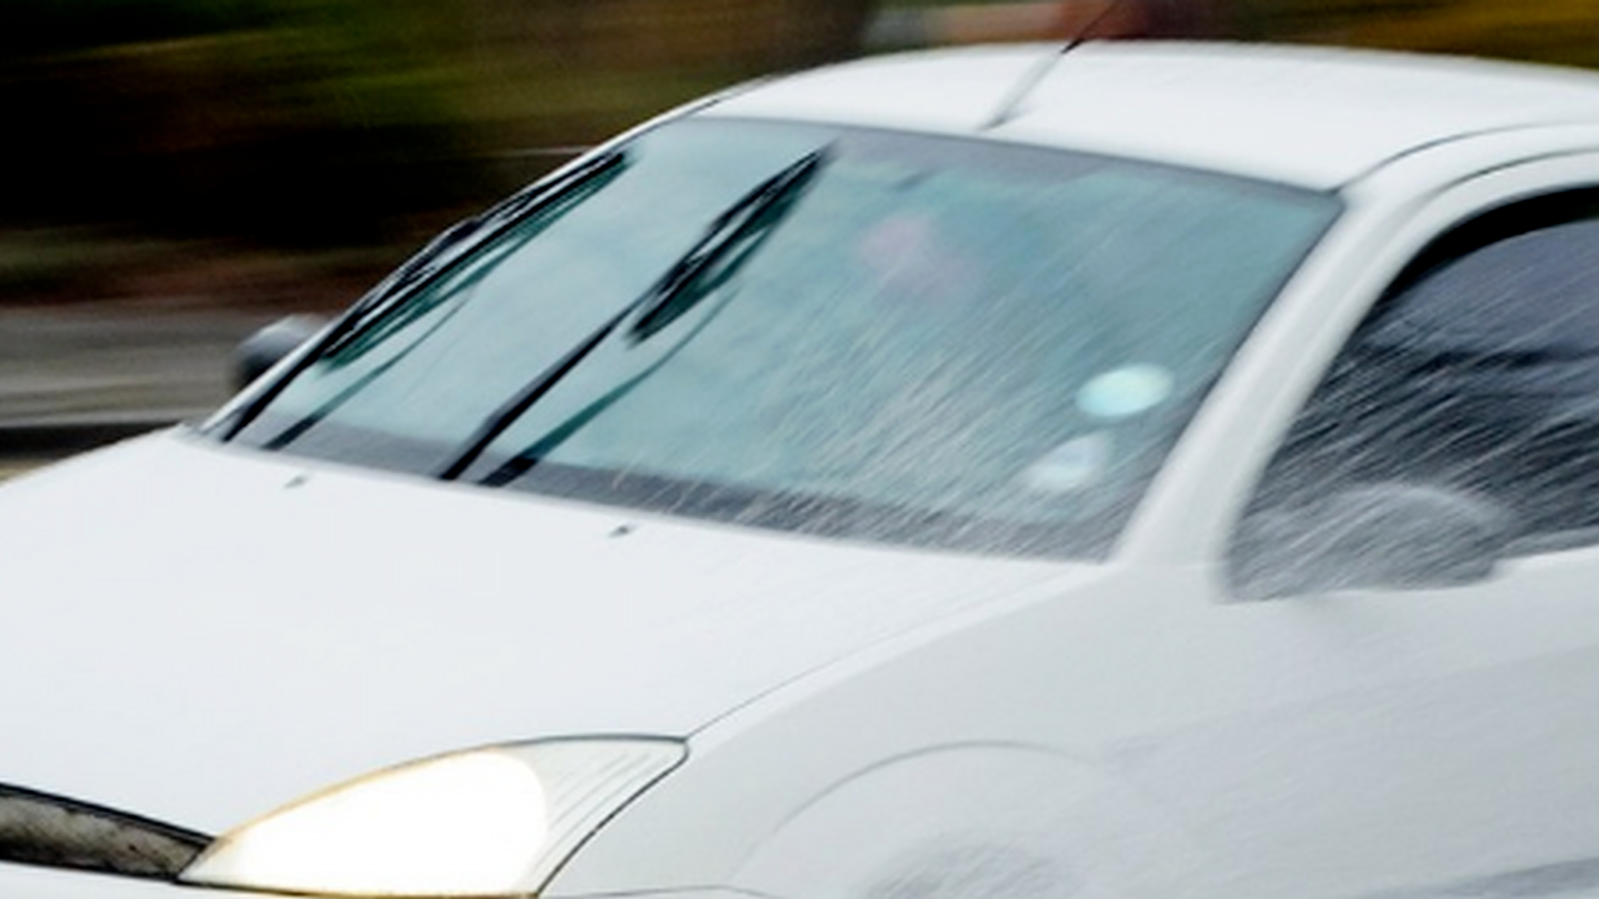 Carreteras polvorientas y alérgenos: Protección de la seguridad del conductor mediante la limpieza del parabrisas